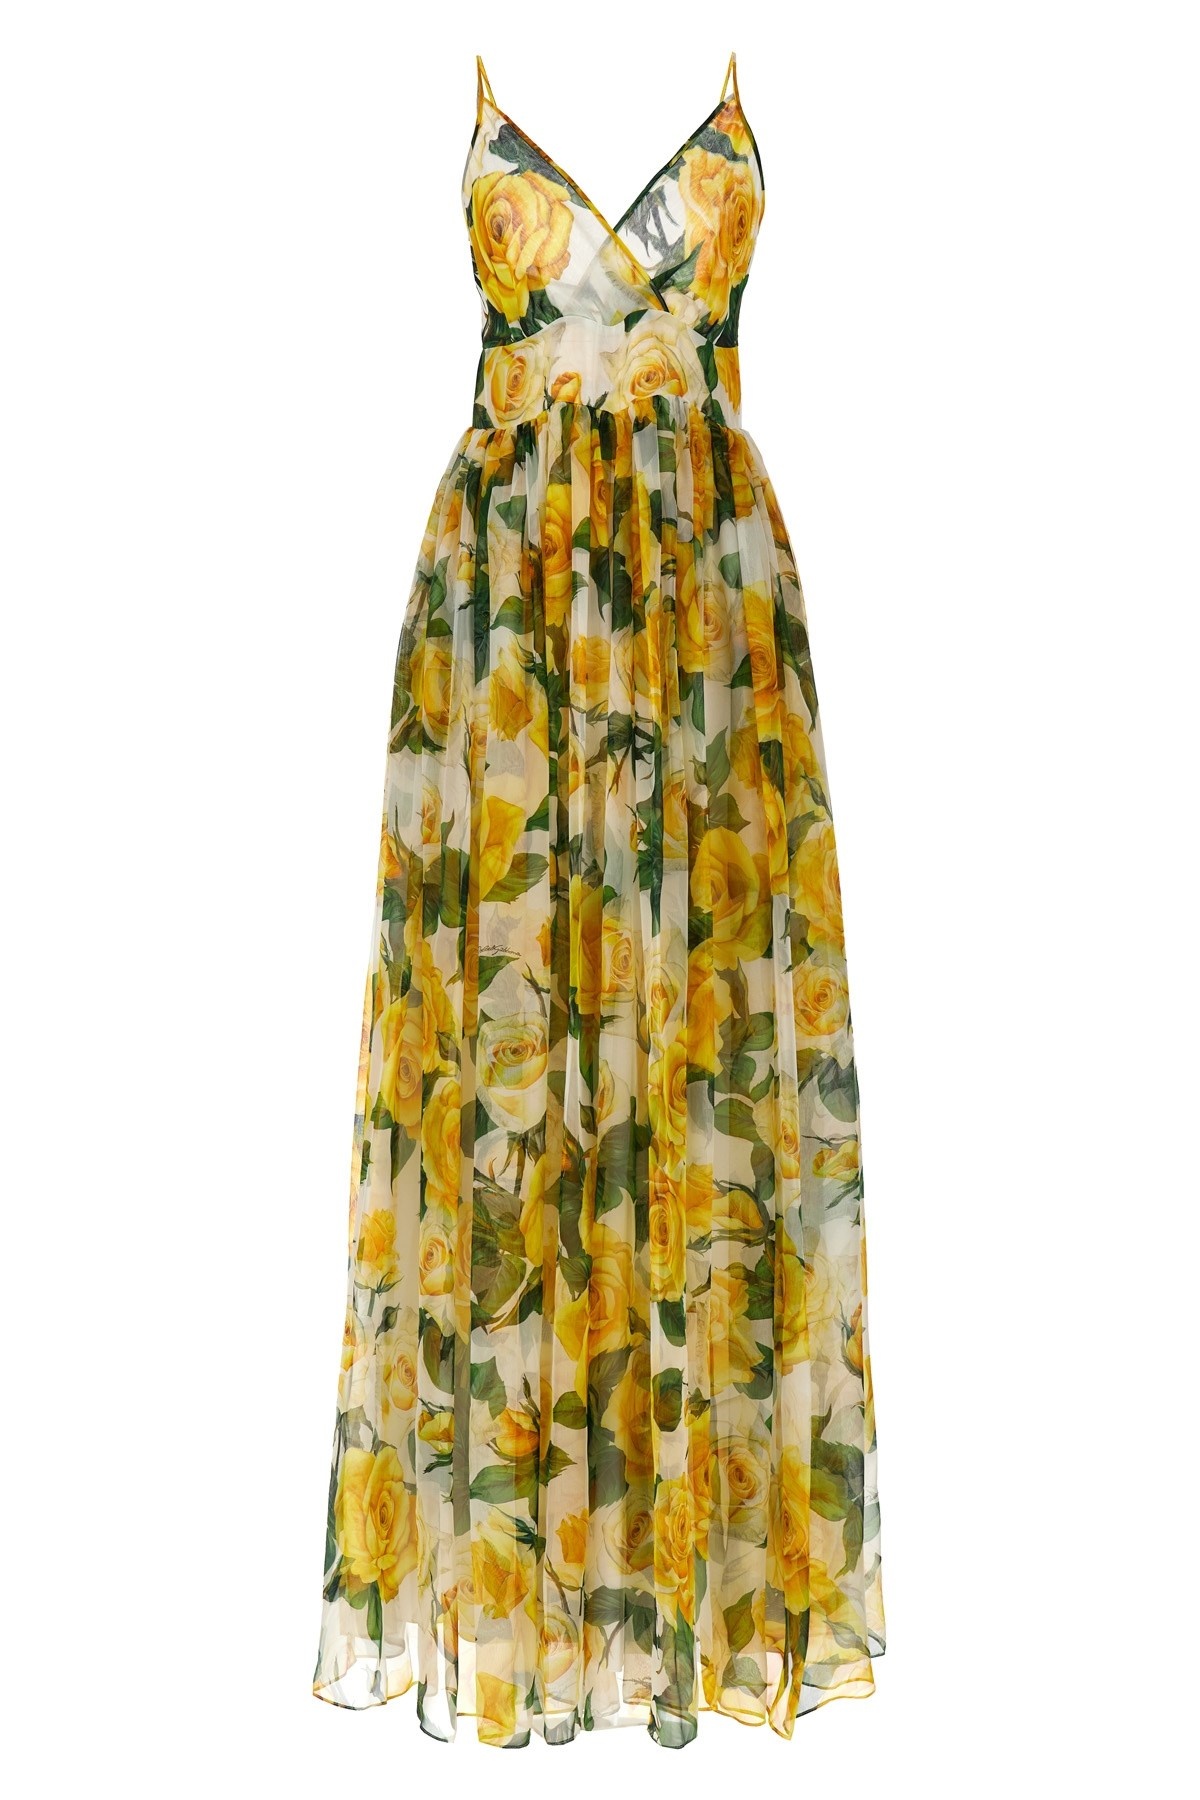 'Rose gialle' dress - 1